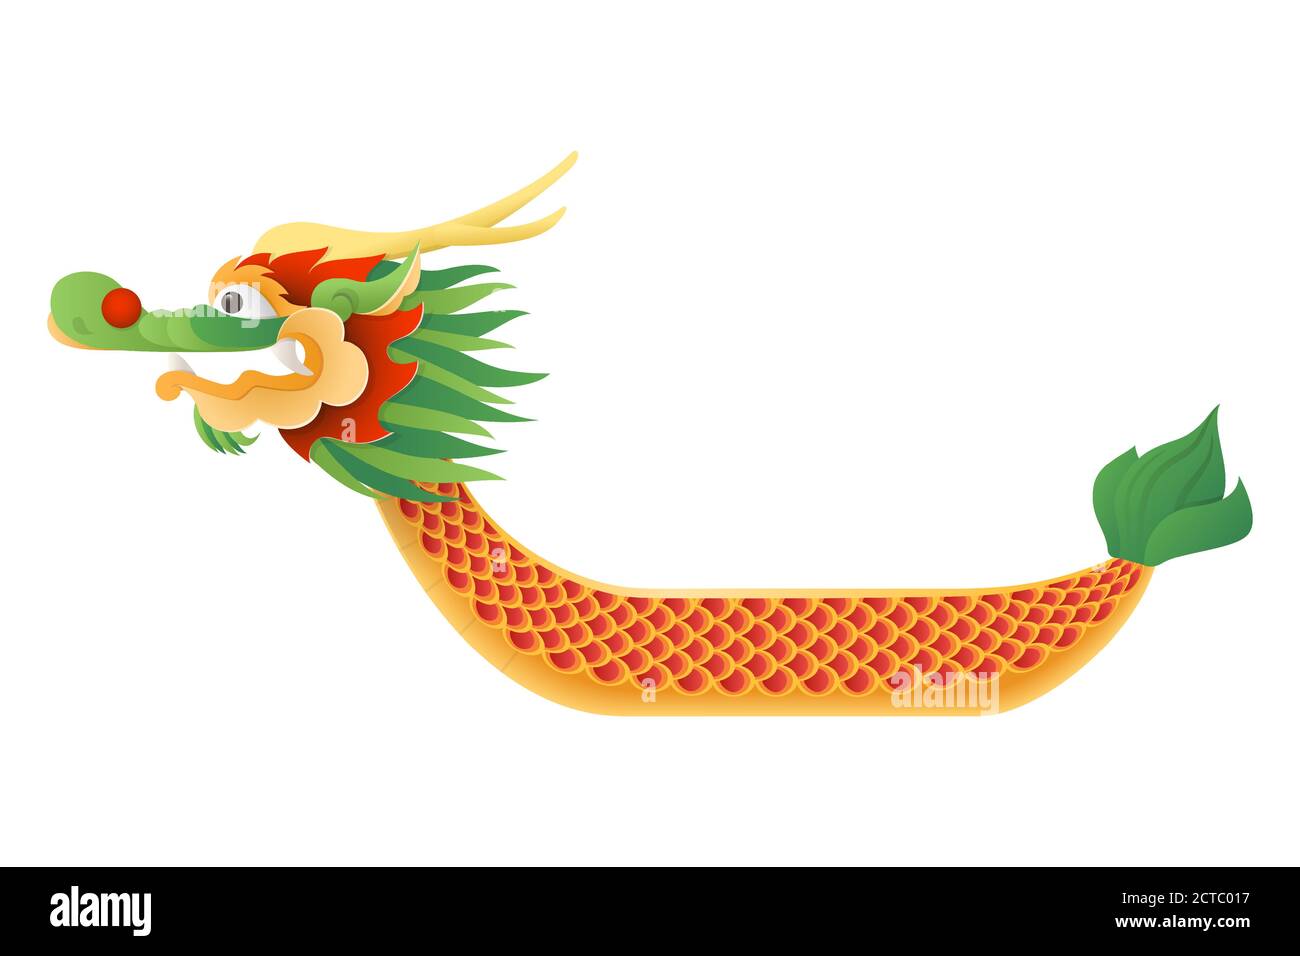 Festival traditionnel bateau-dragon - illustration vecteur bateau isolée sur fond transparent - Festival Duanwu ou Zhongxiao Illustration de Vecteur